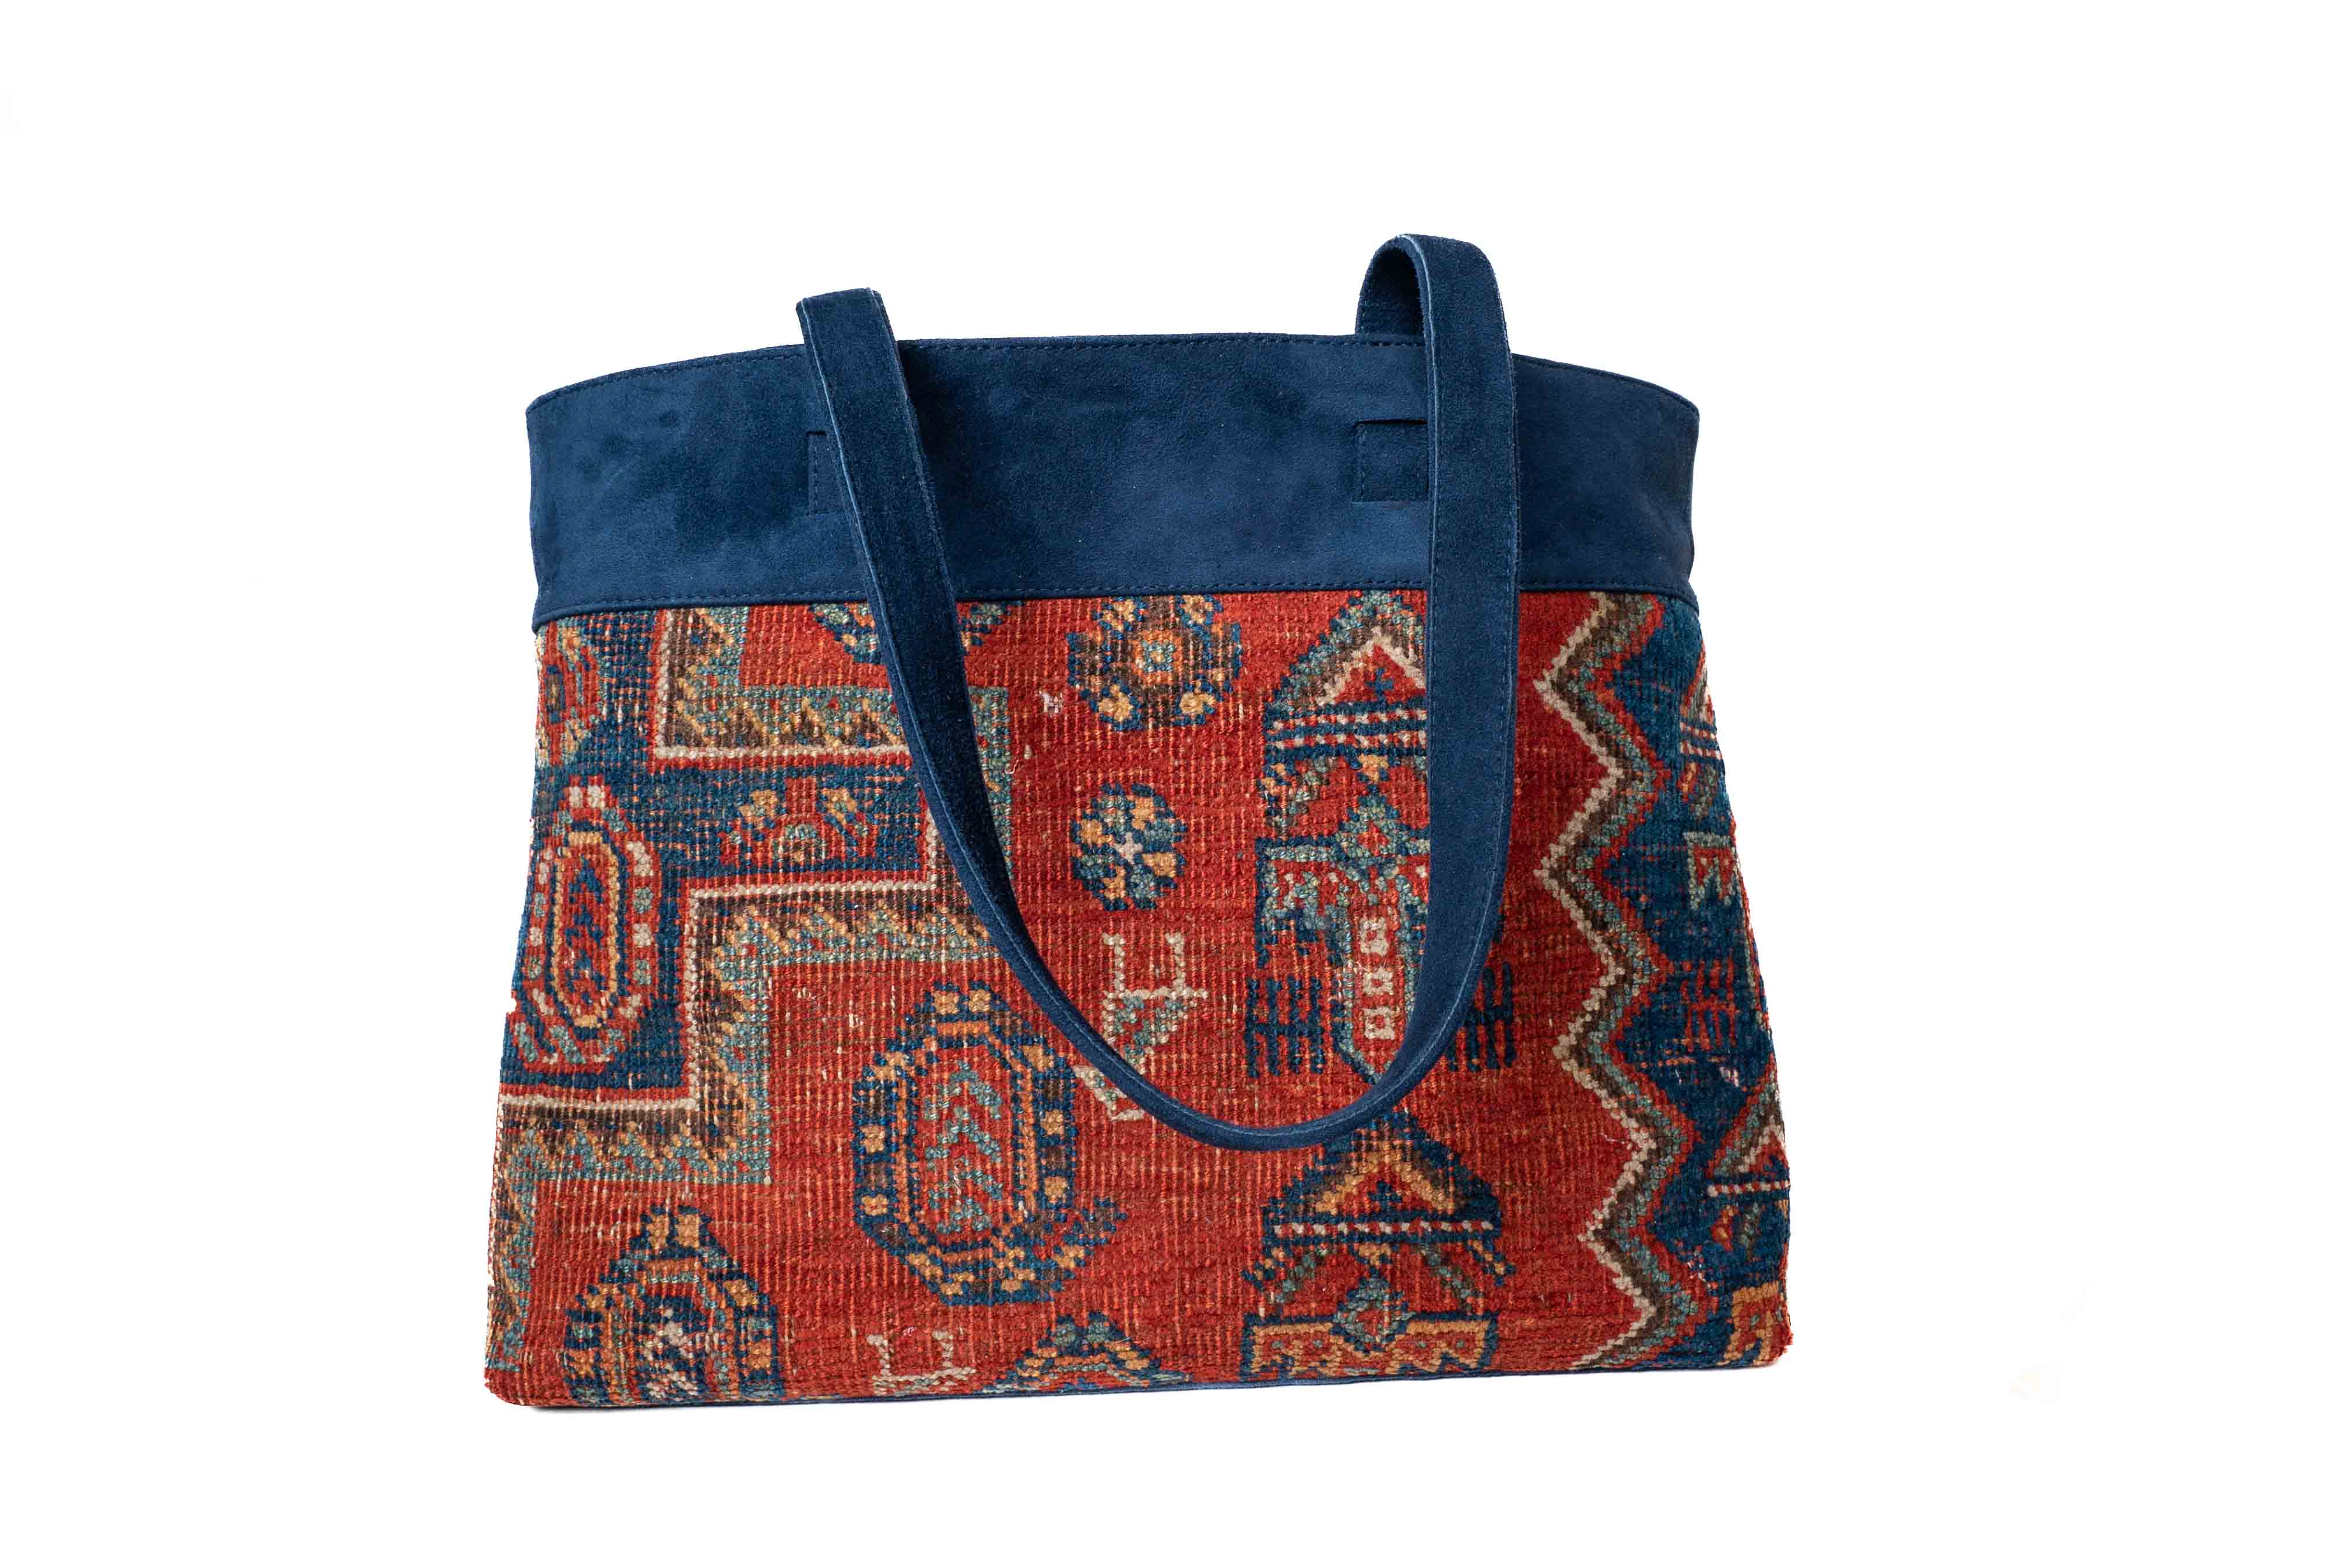 Aesthetic Fashion Kilim Jute & Cotton Handbag / Shoulder Bag - 16 x 15 x 5  inches